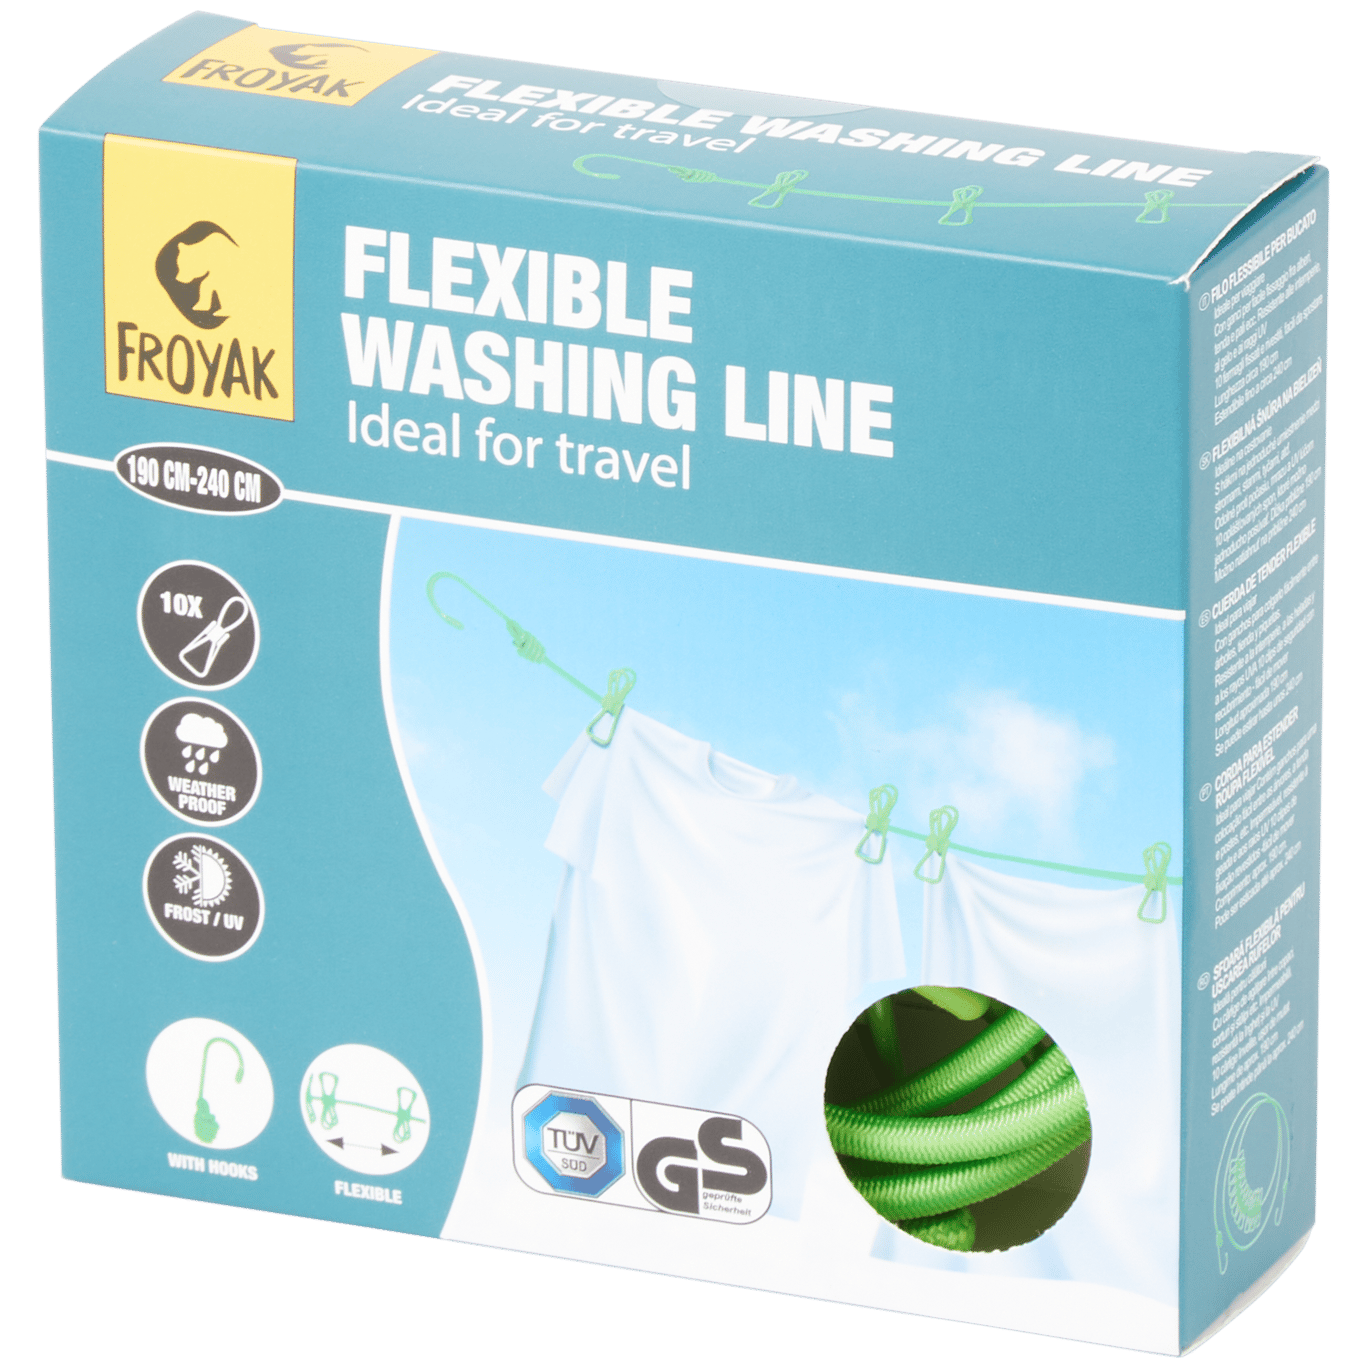 Froyak flexibele waslijn